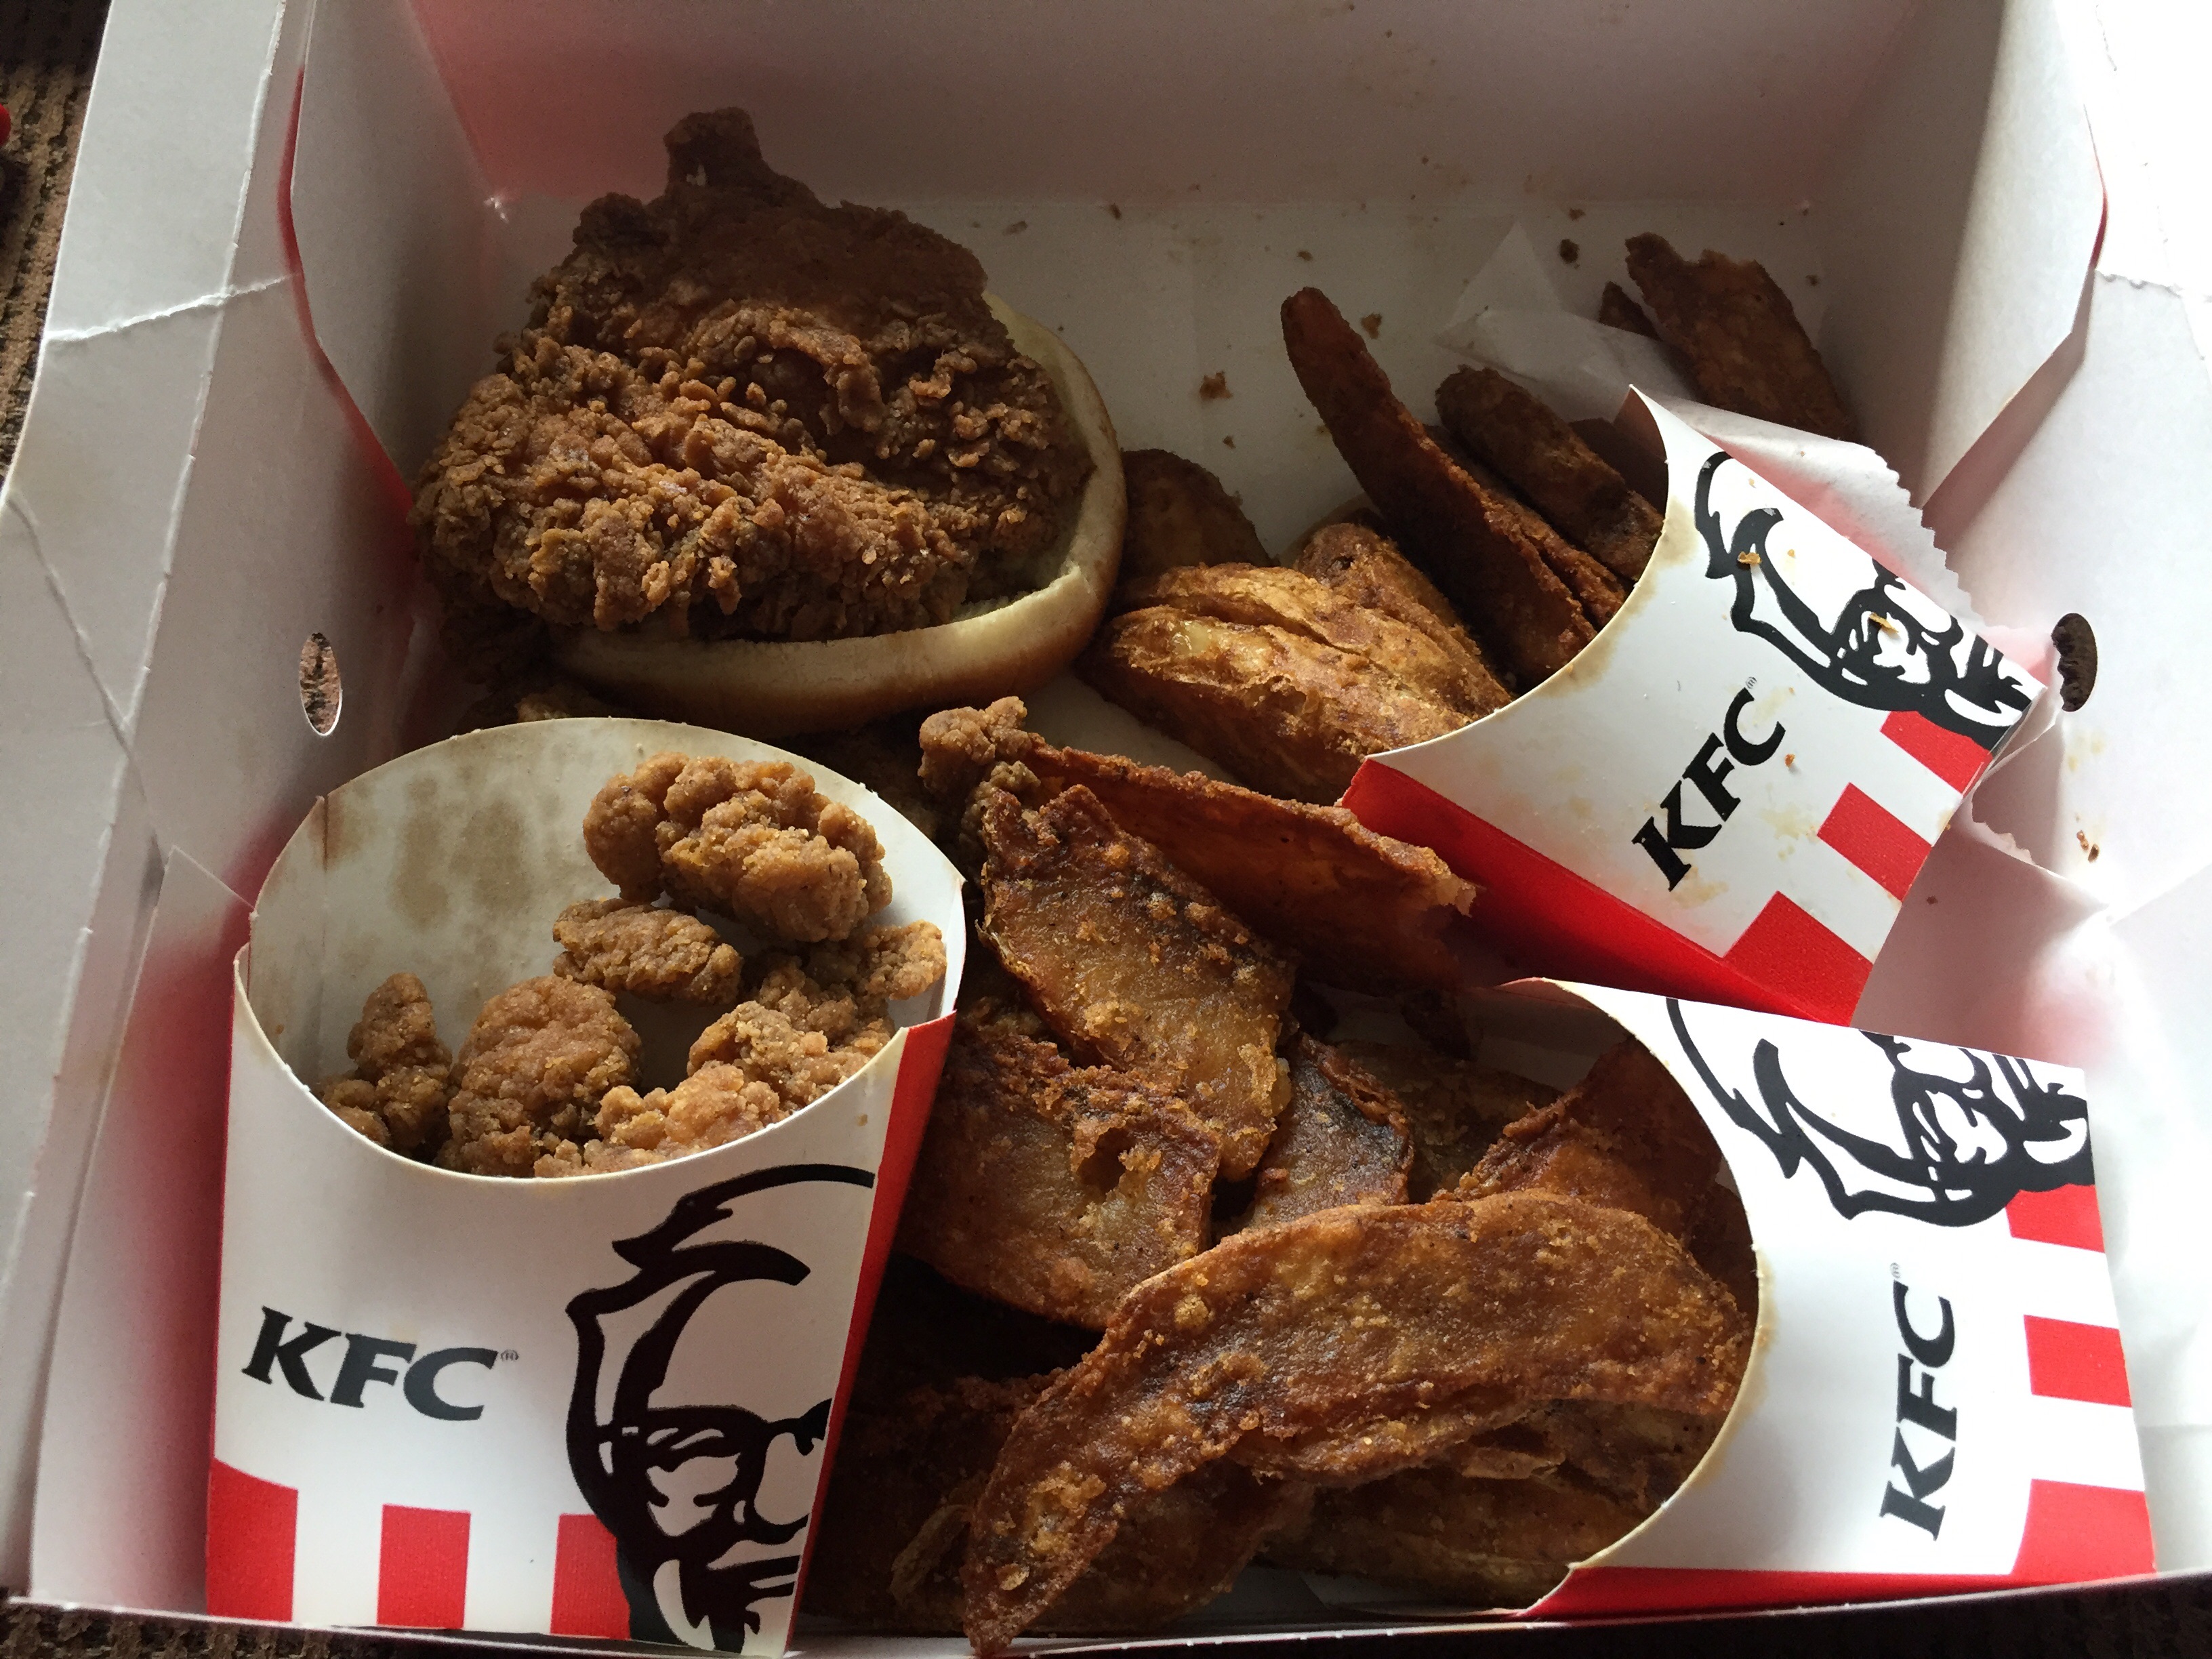 Customer number kfc service KFC :